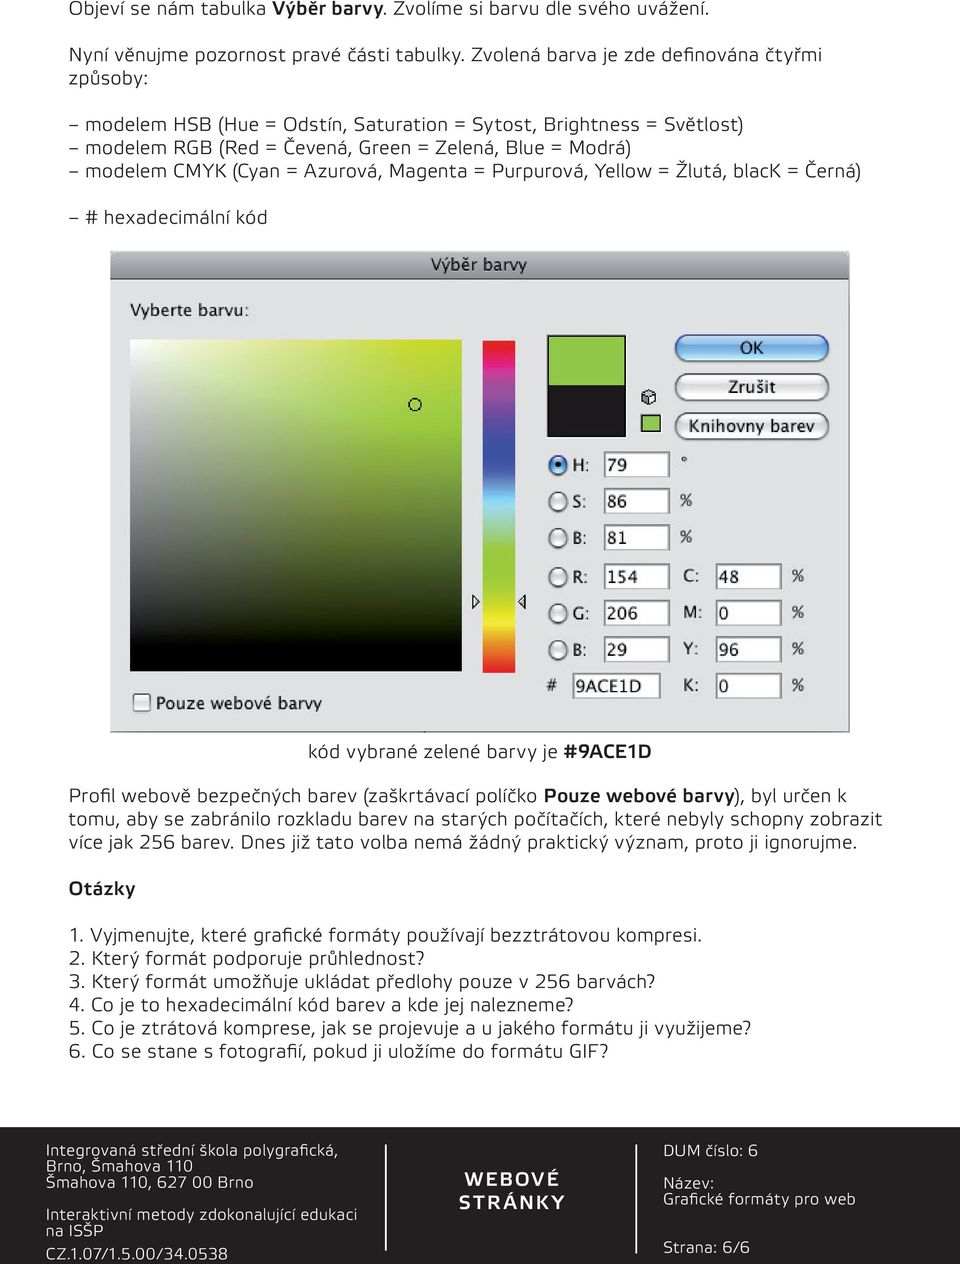 Azurová, Magenta = Purpurová, Yellow = Žlutá, black = Černá) # hexadecimální kód Profil webově bezpečných barev (zaškrtávací políčko Pouze barvy), byl určen k tomu, aby se zabránilo rozkladu barev na